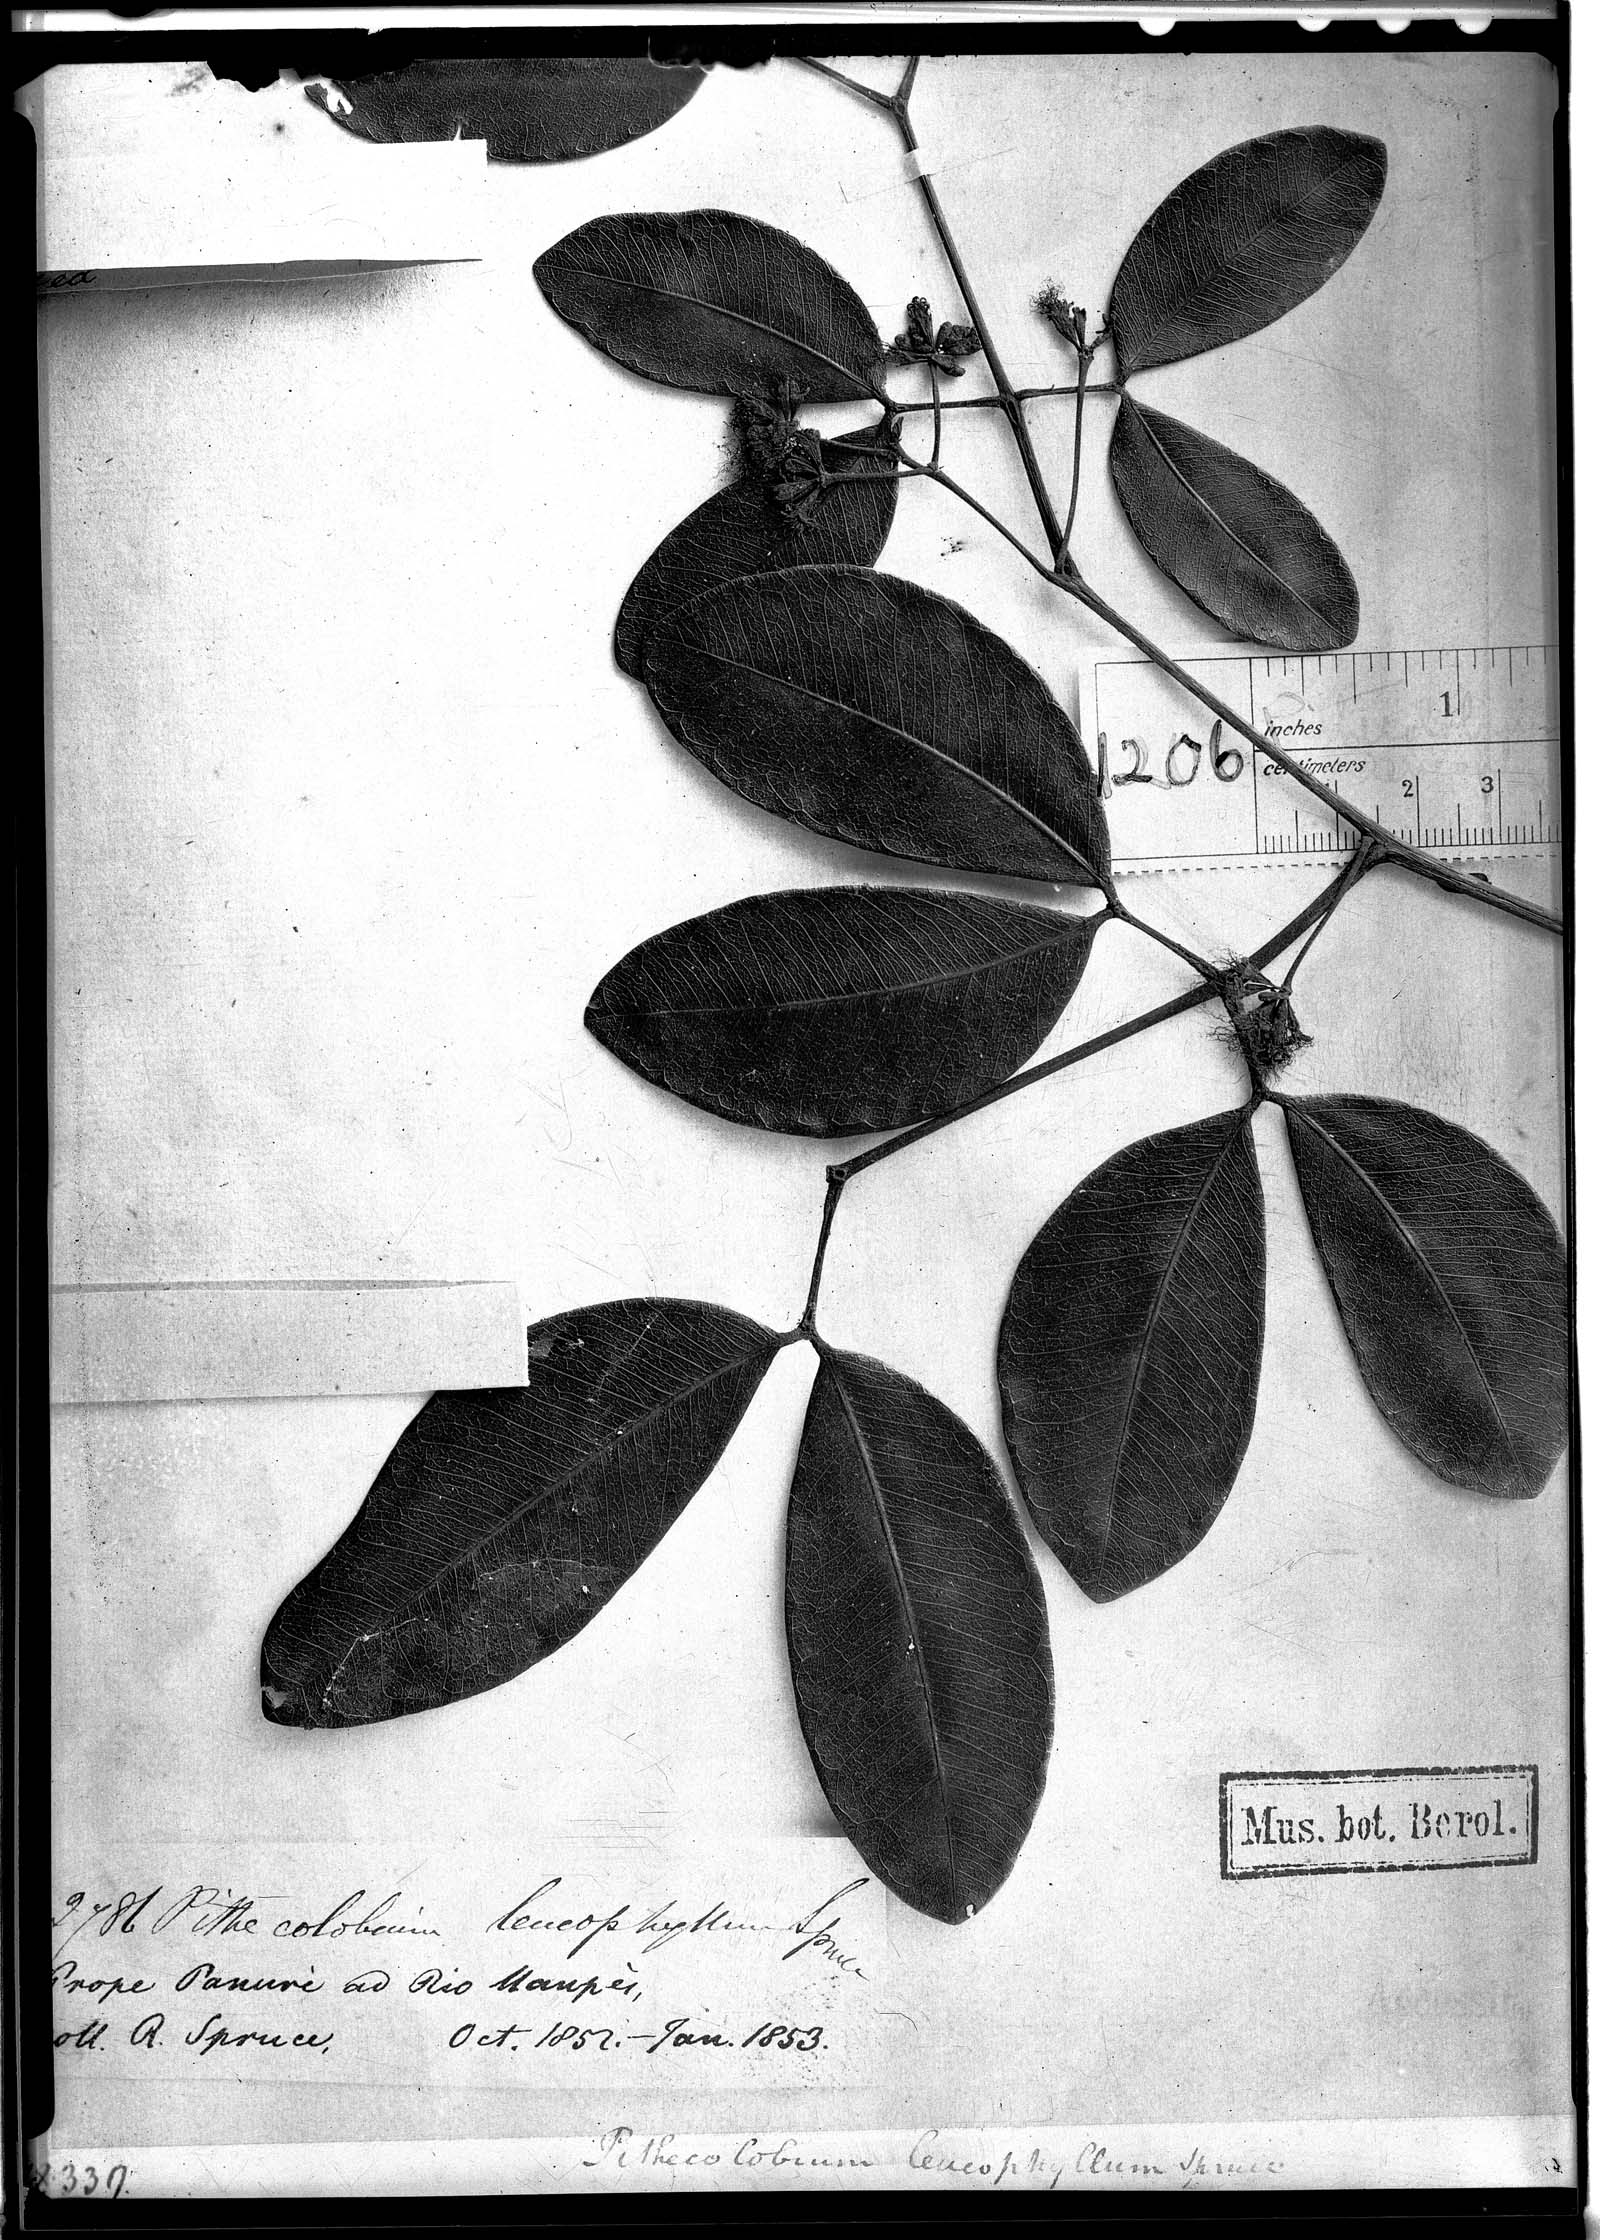 Abarema leucophylla image